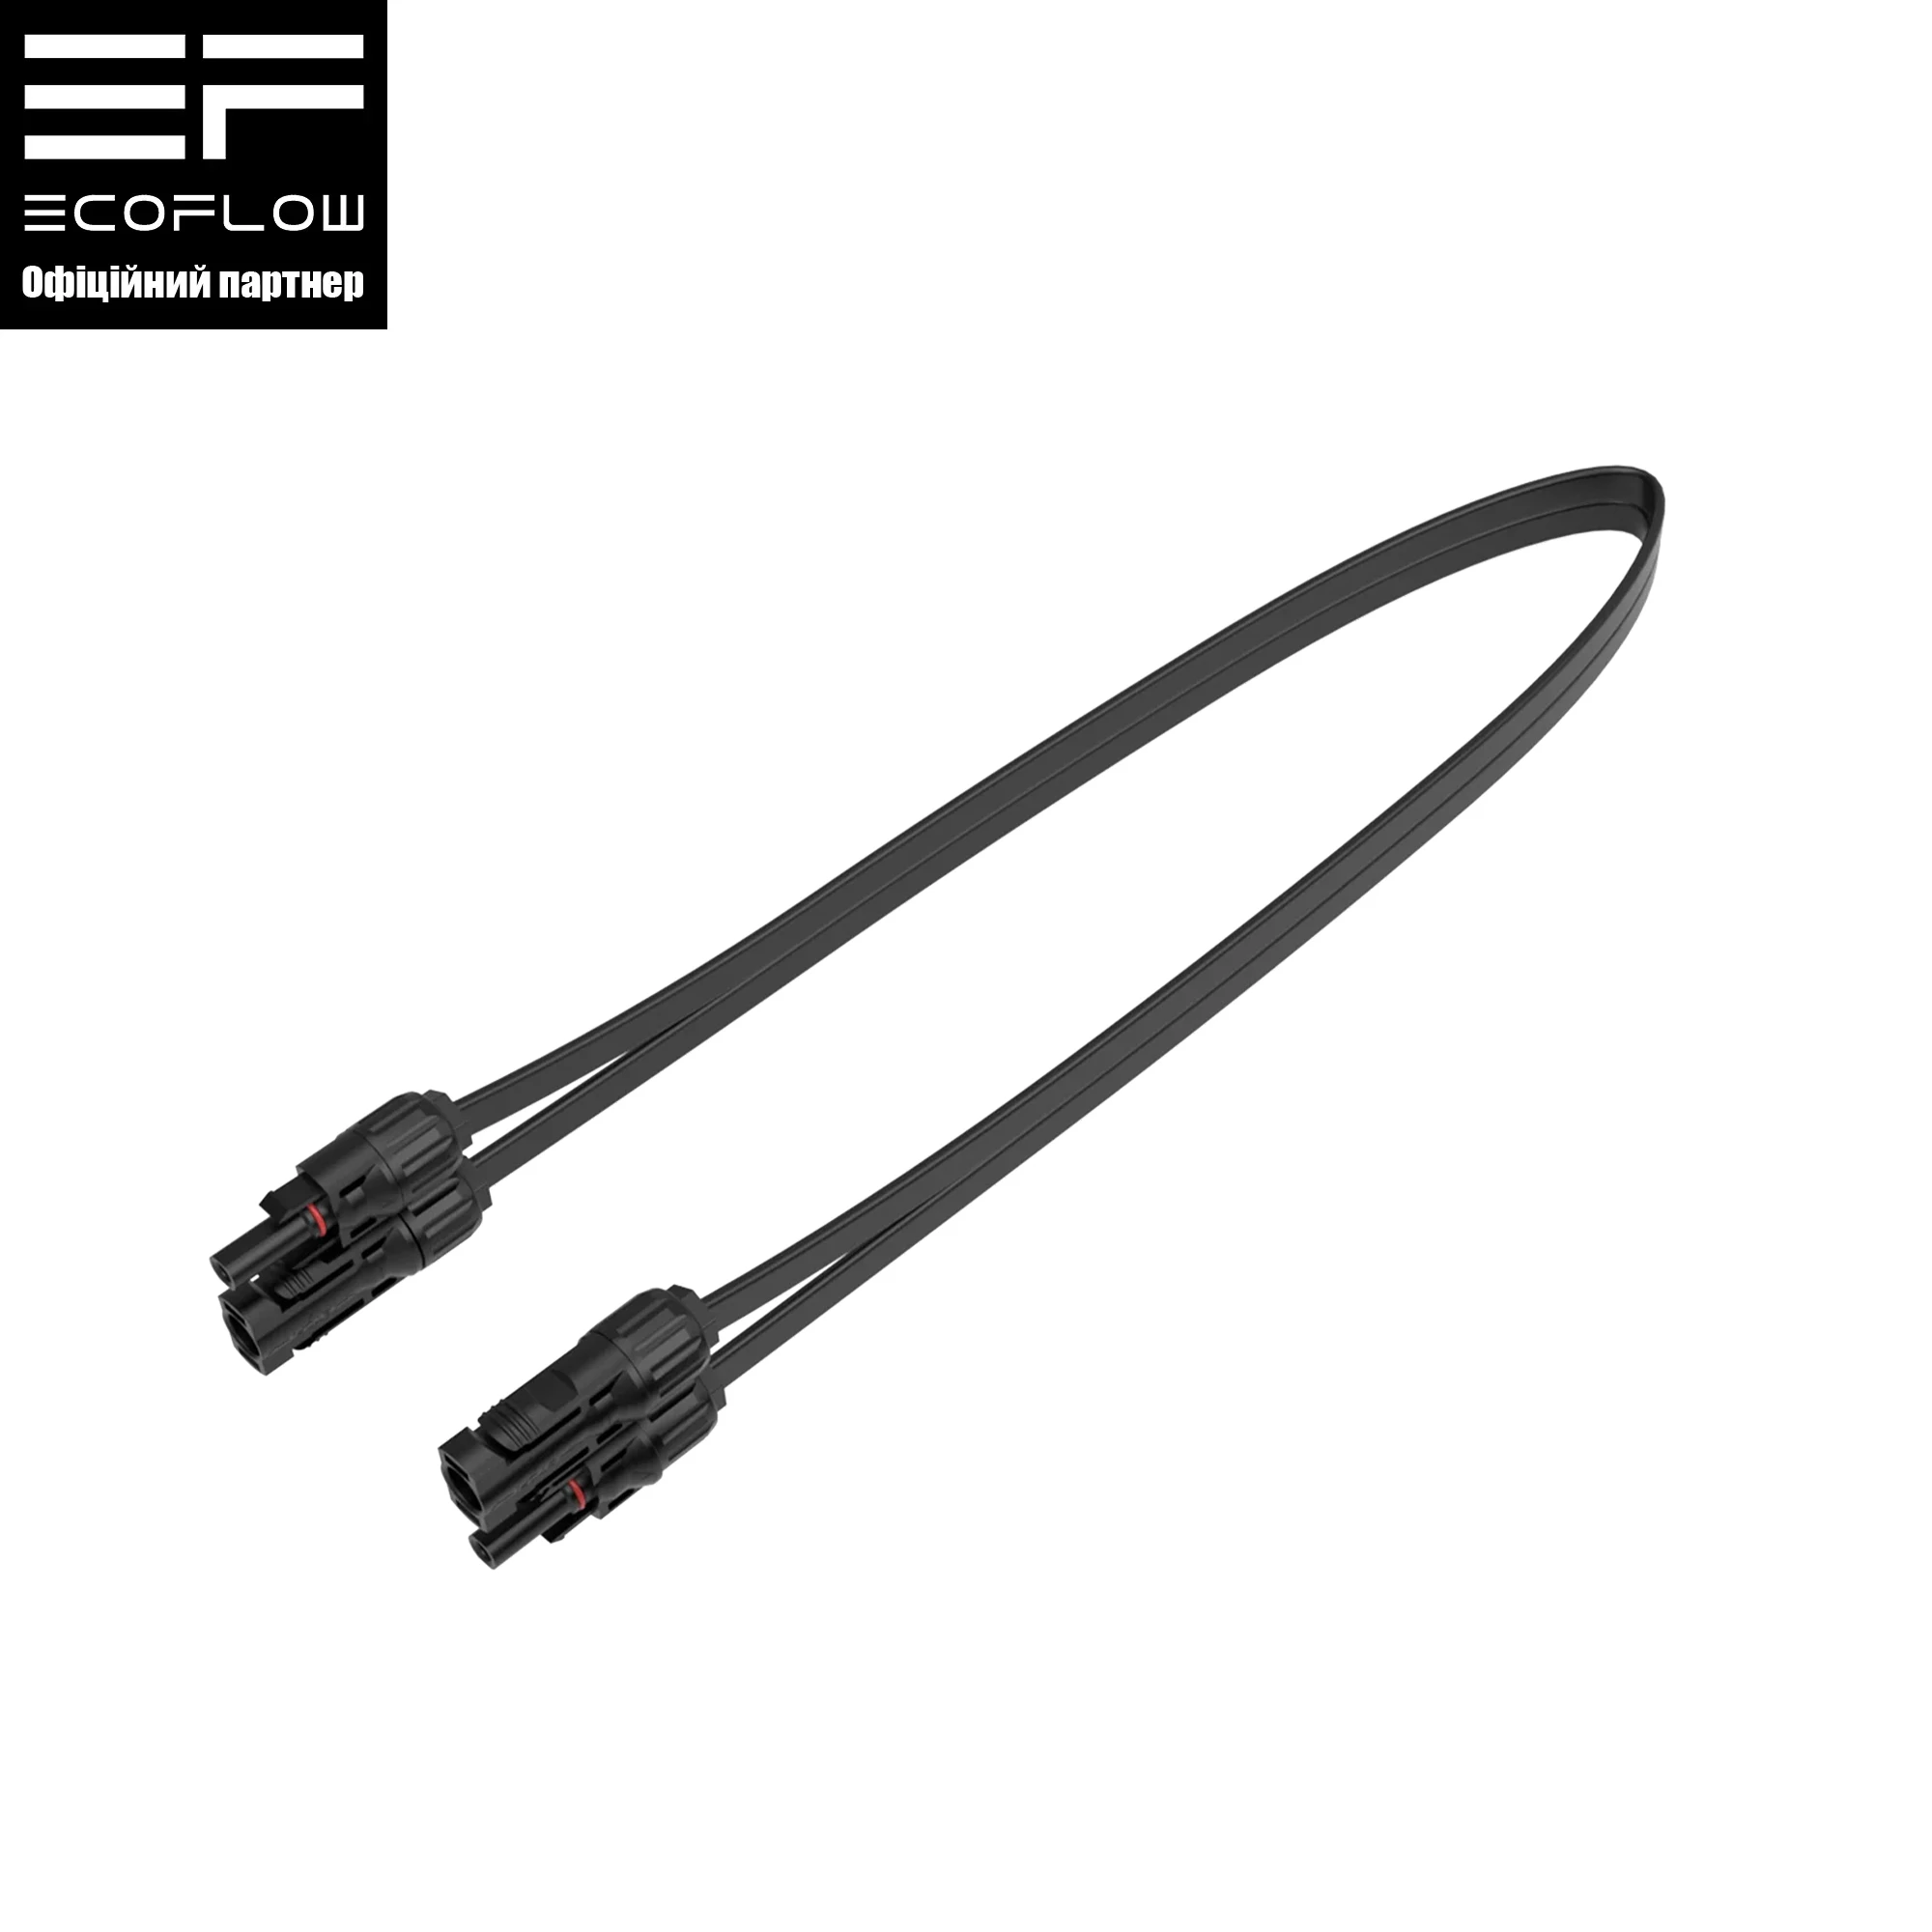 Плоский кабель EcoFlow Super Flat MC4 Cable (EFL-SuperFlatMC4Cable)